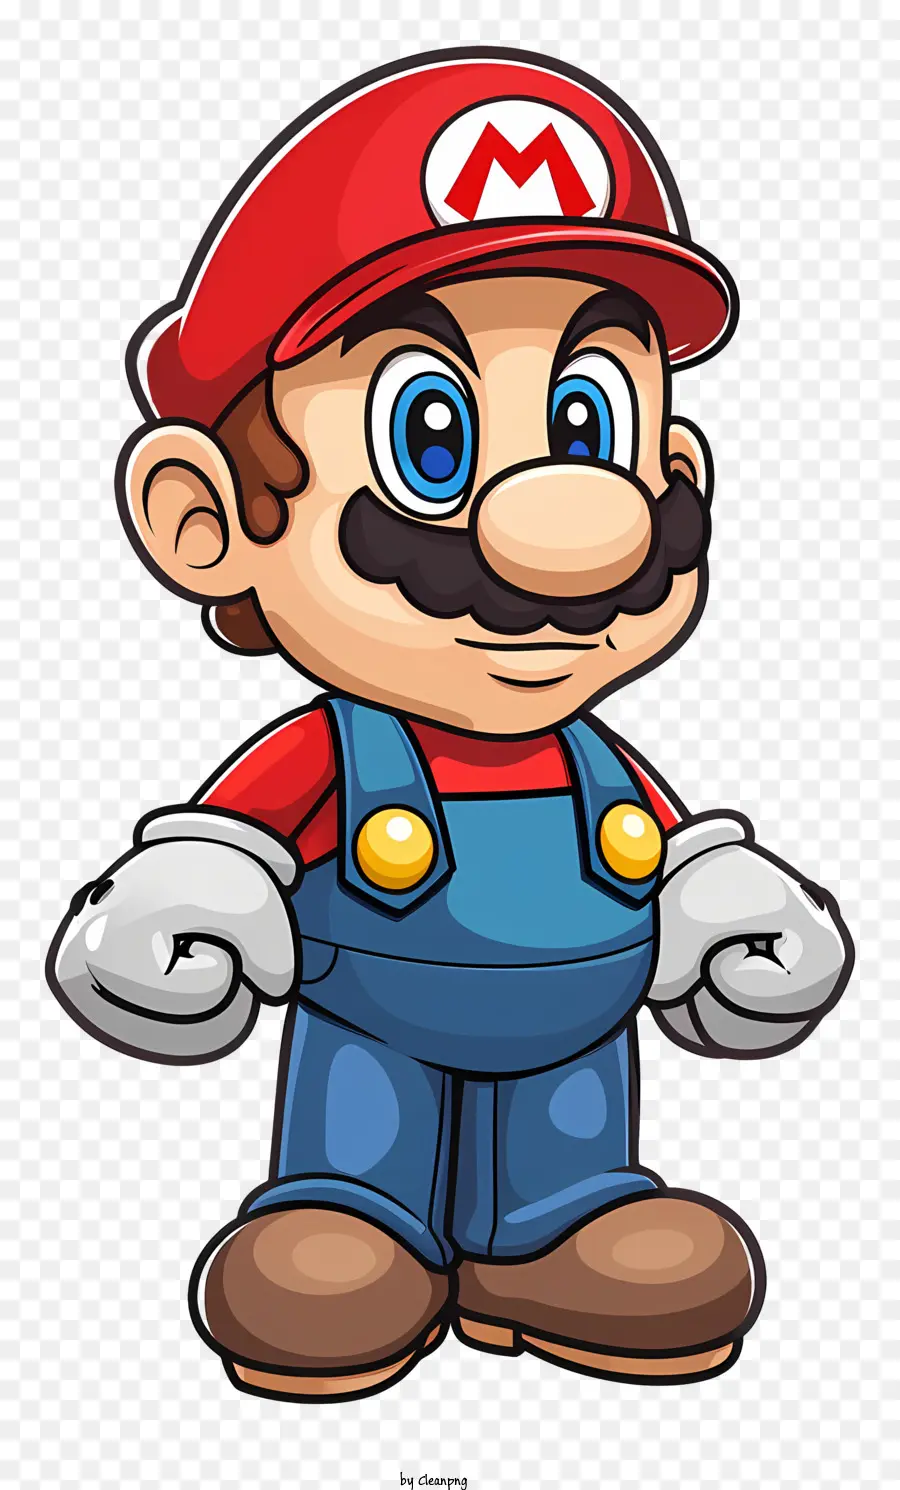 Mario - Uomo felice con gli occhi azzurri che indossa un berretto rosso